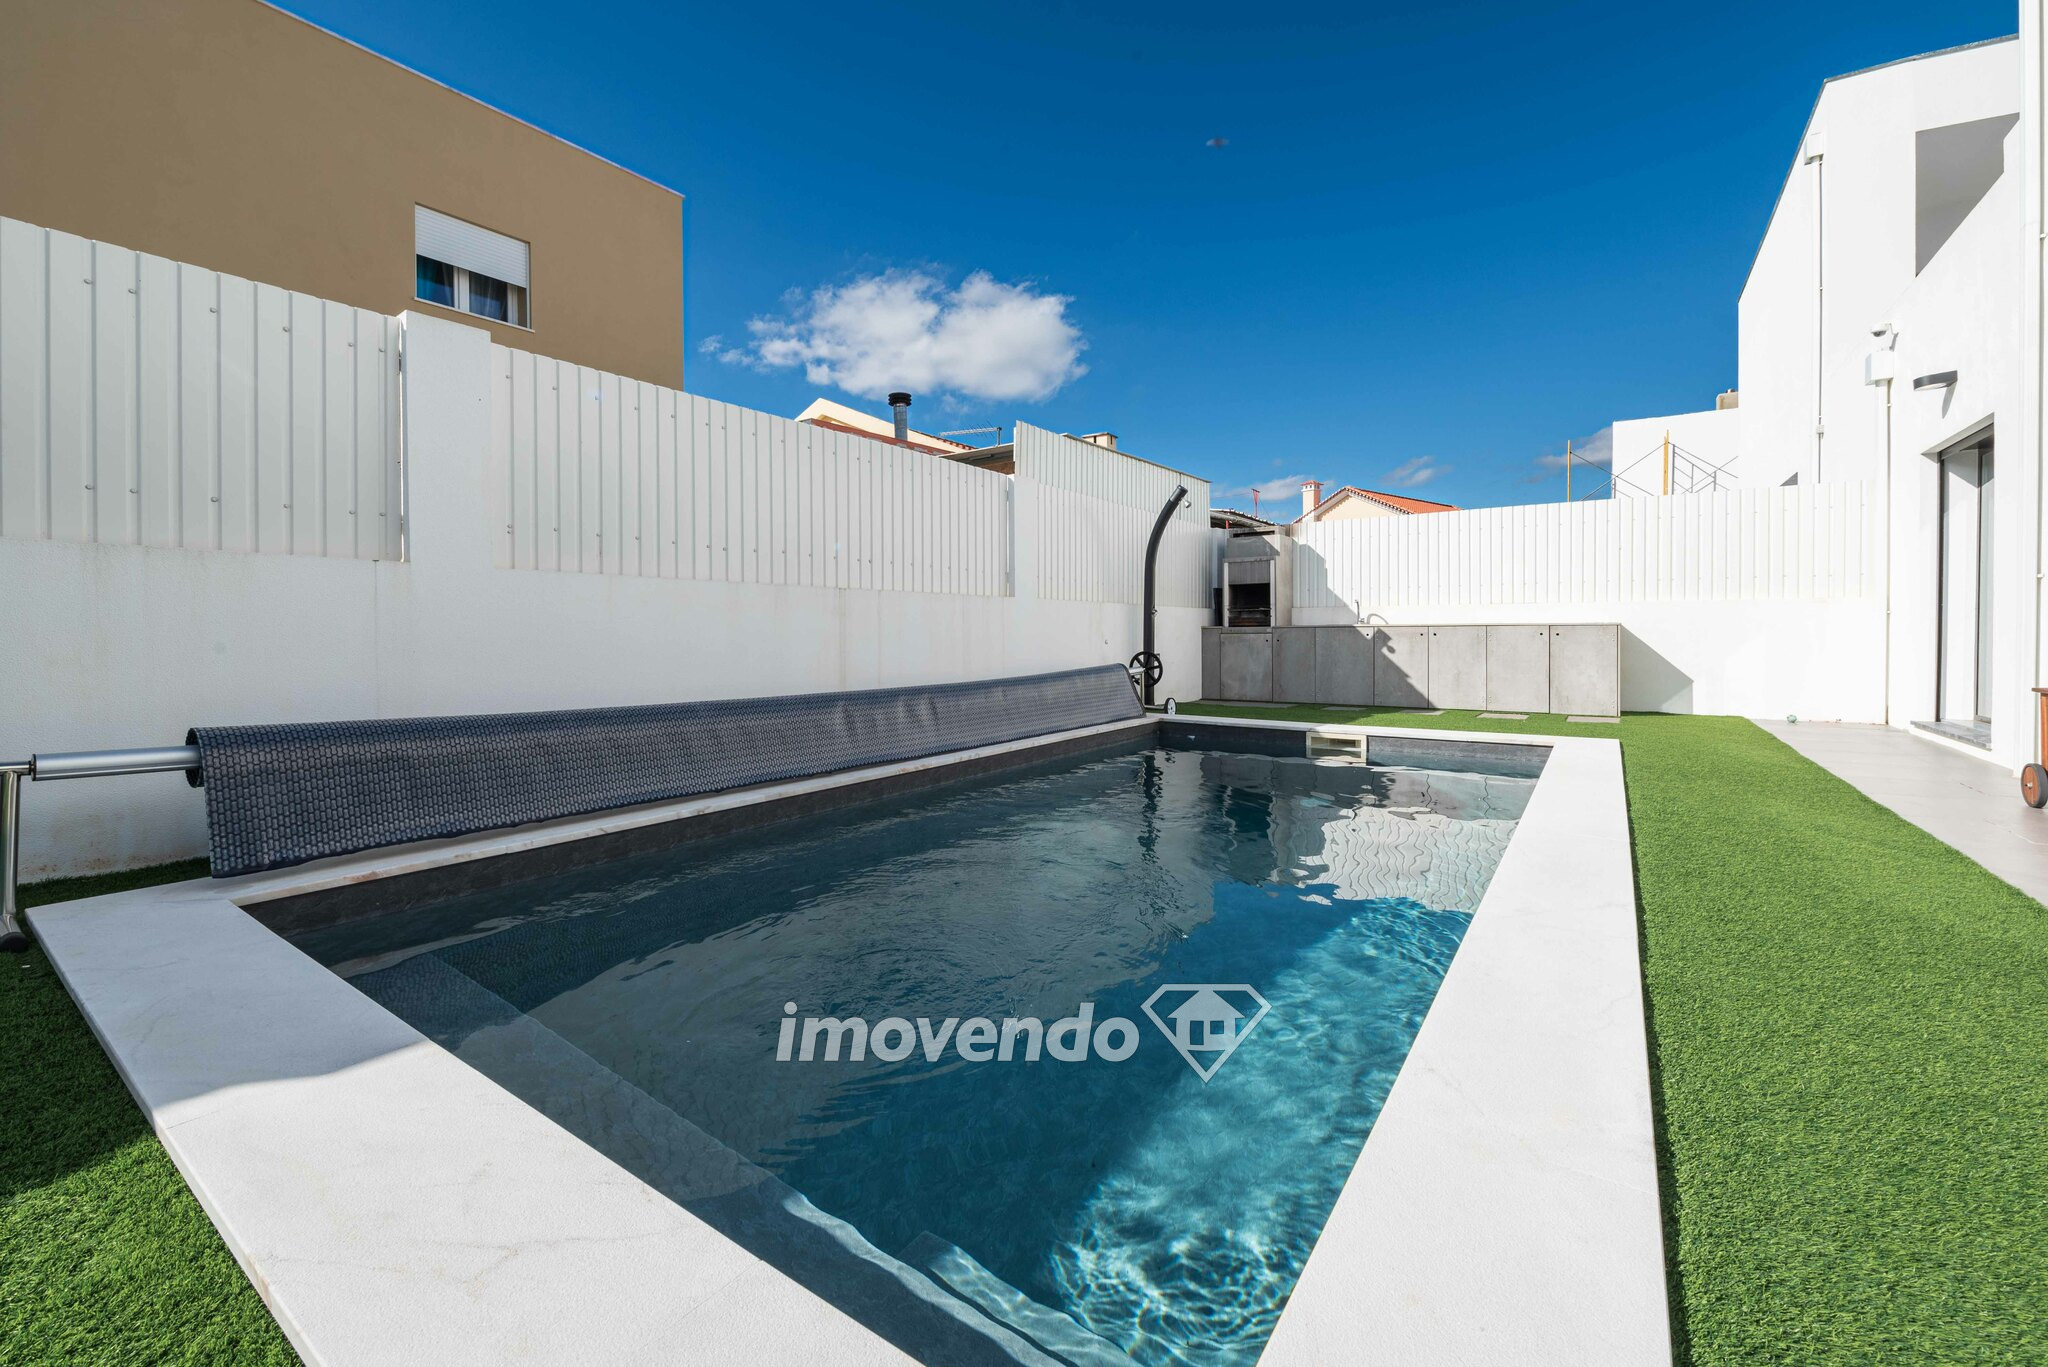 Moradia T3+1 exclusiva, com piscina aquecida e garagem, em Loures